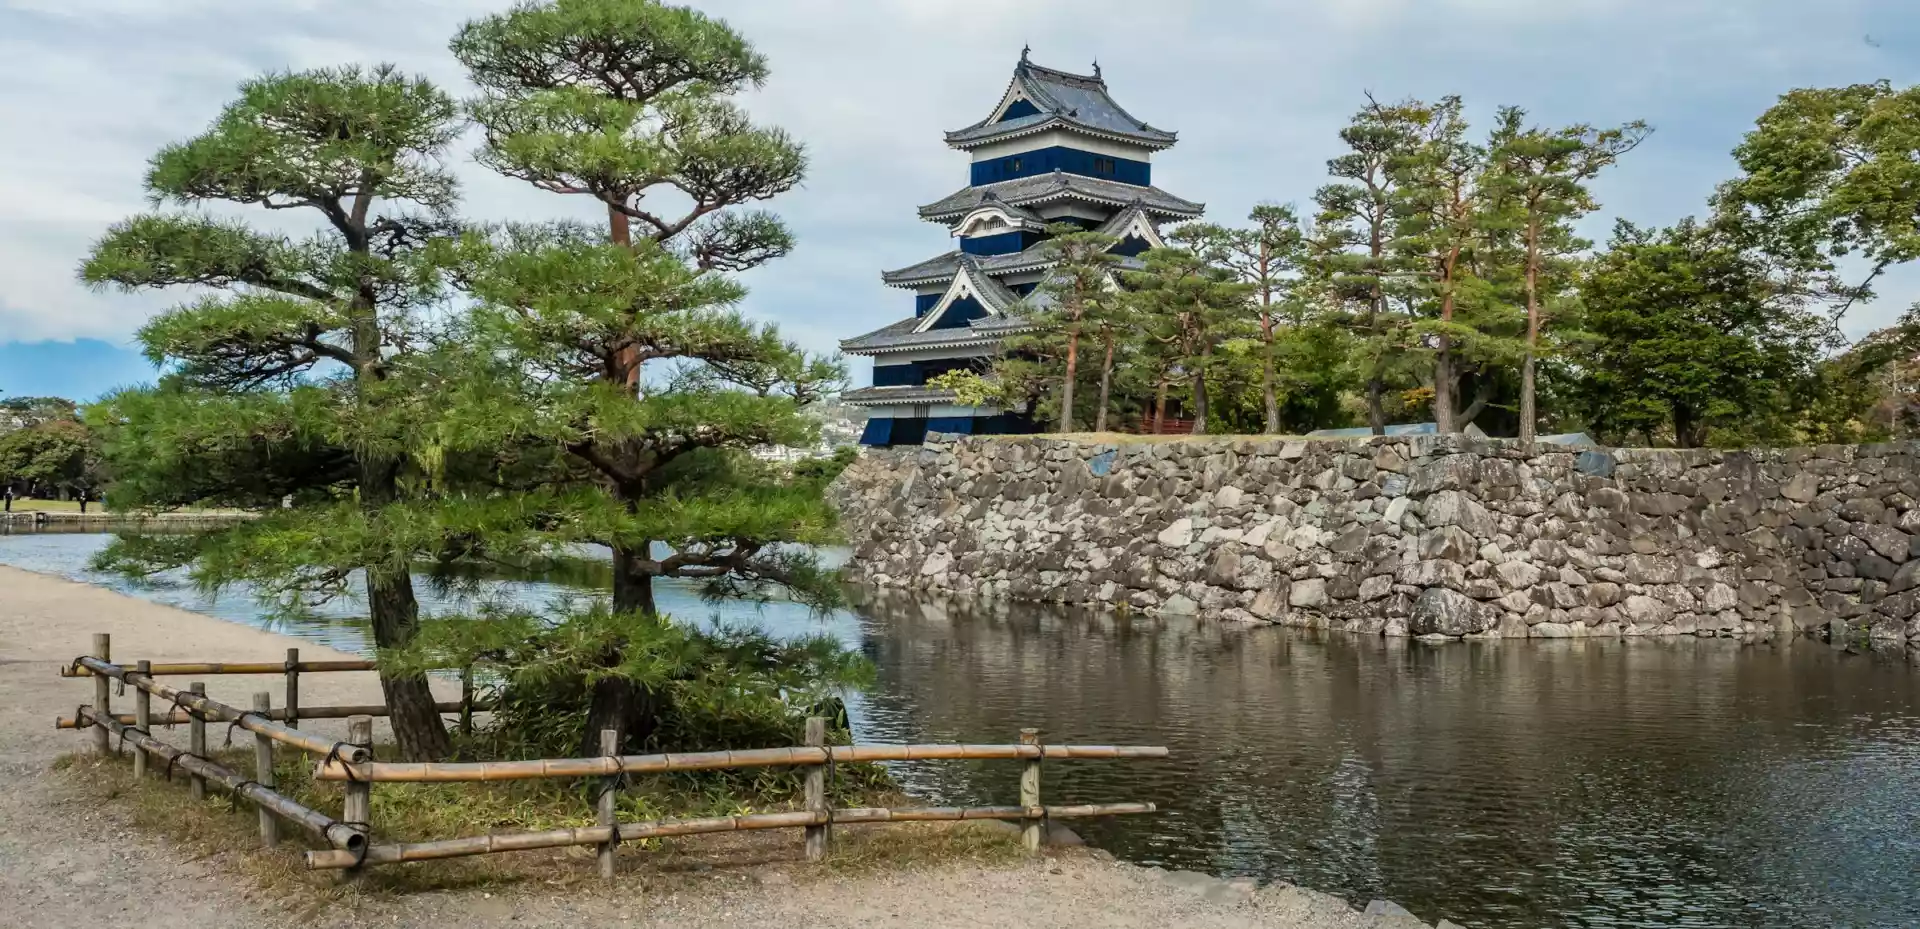 Slott i Matsumoto i tradisjonell japansk stil ved en innsjø omgitt av trær.